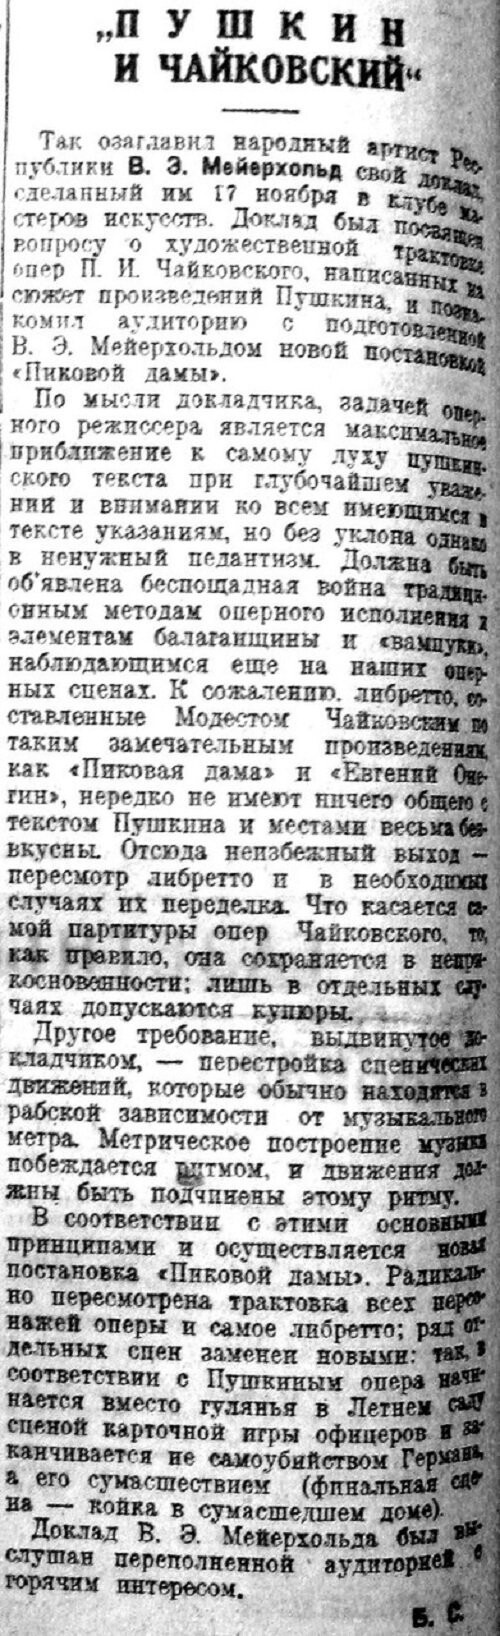 «Известия», 20 ноября 1934 г.